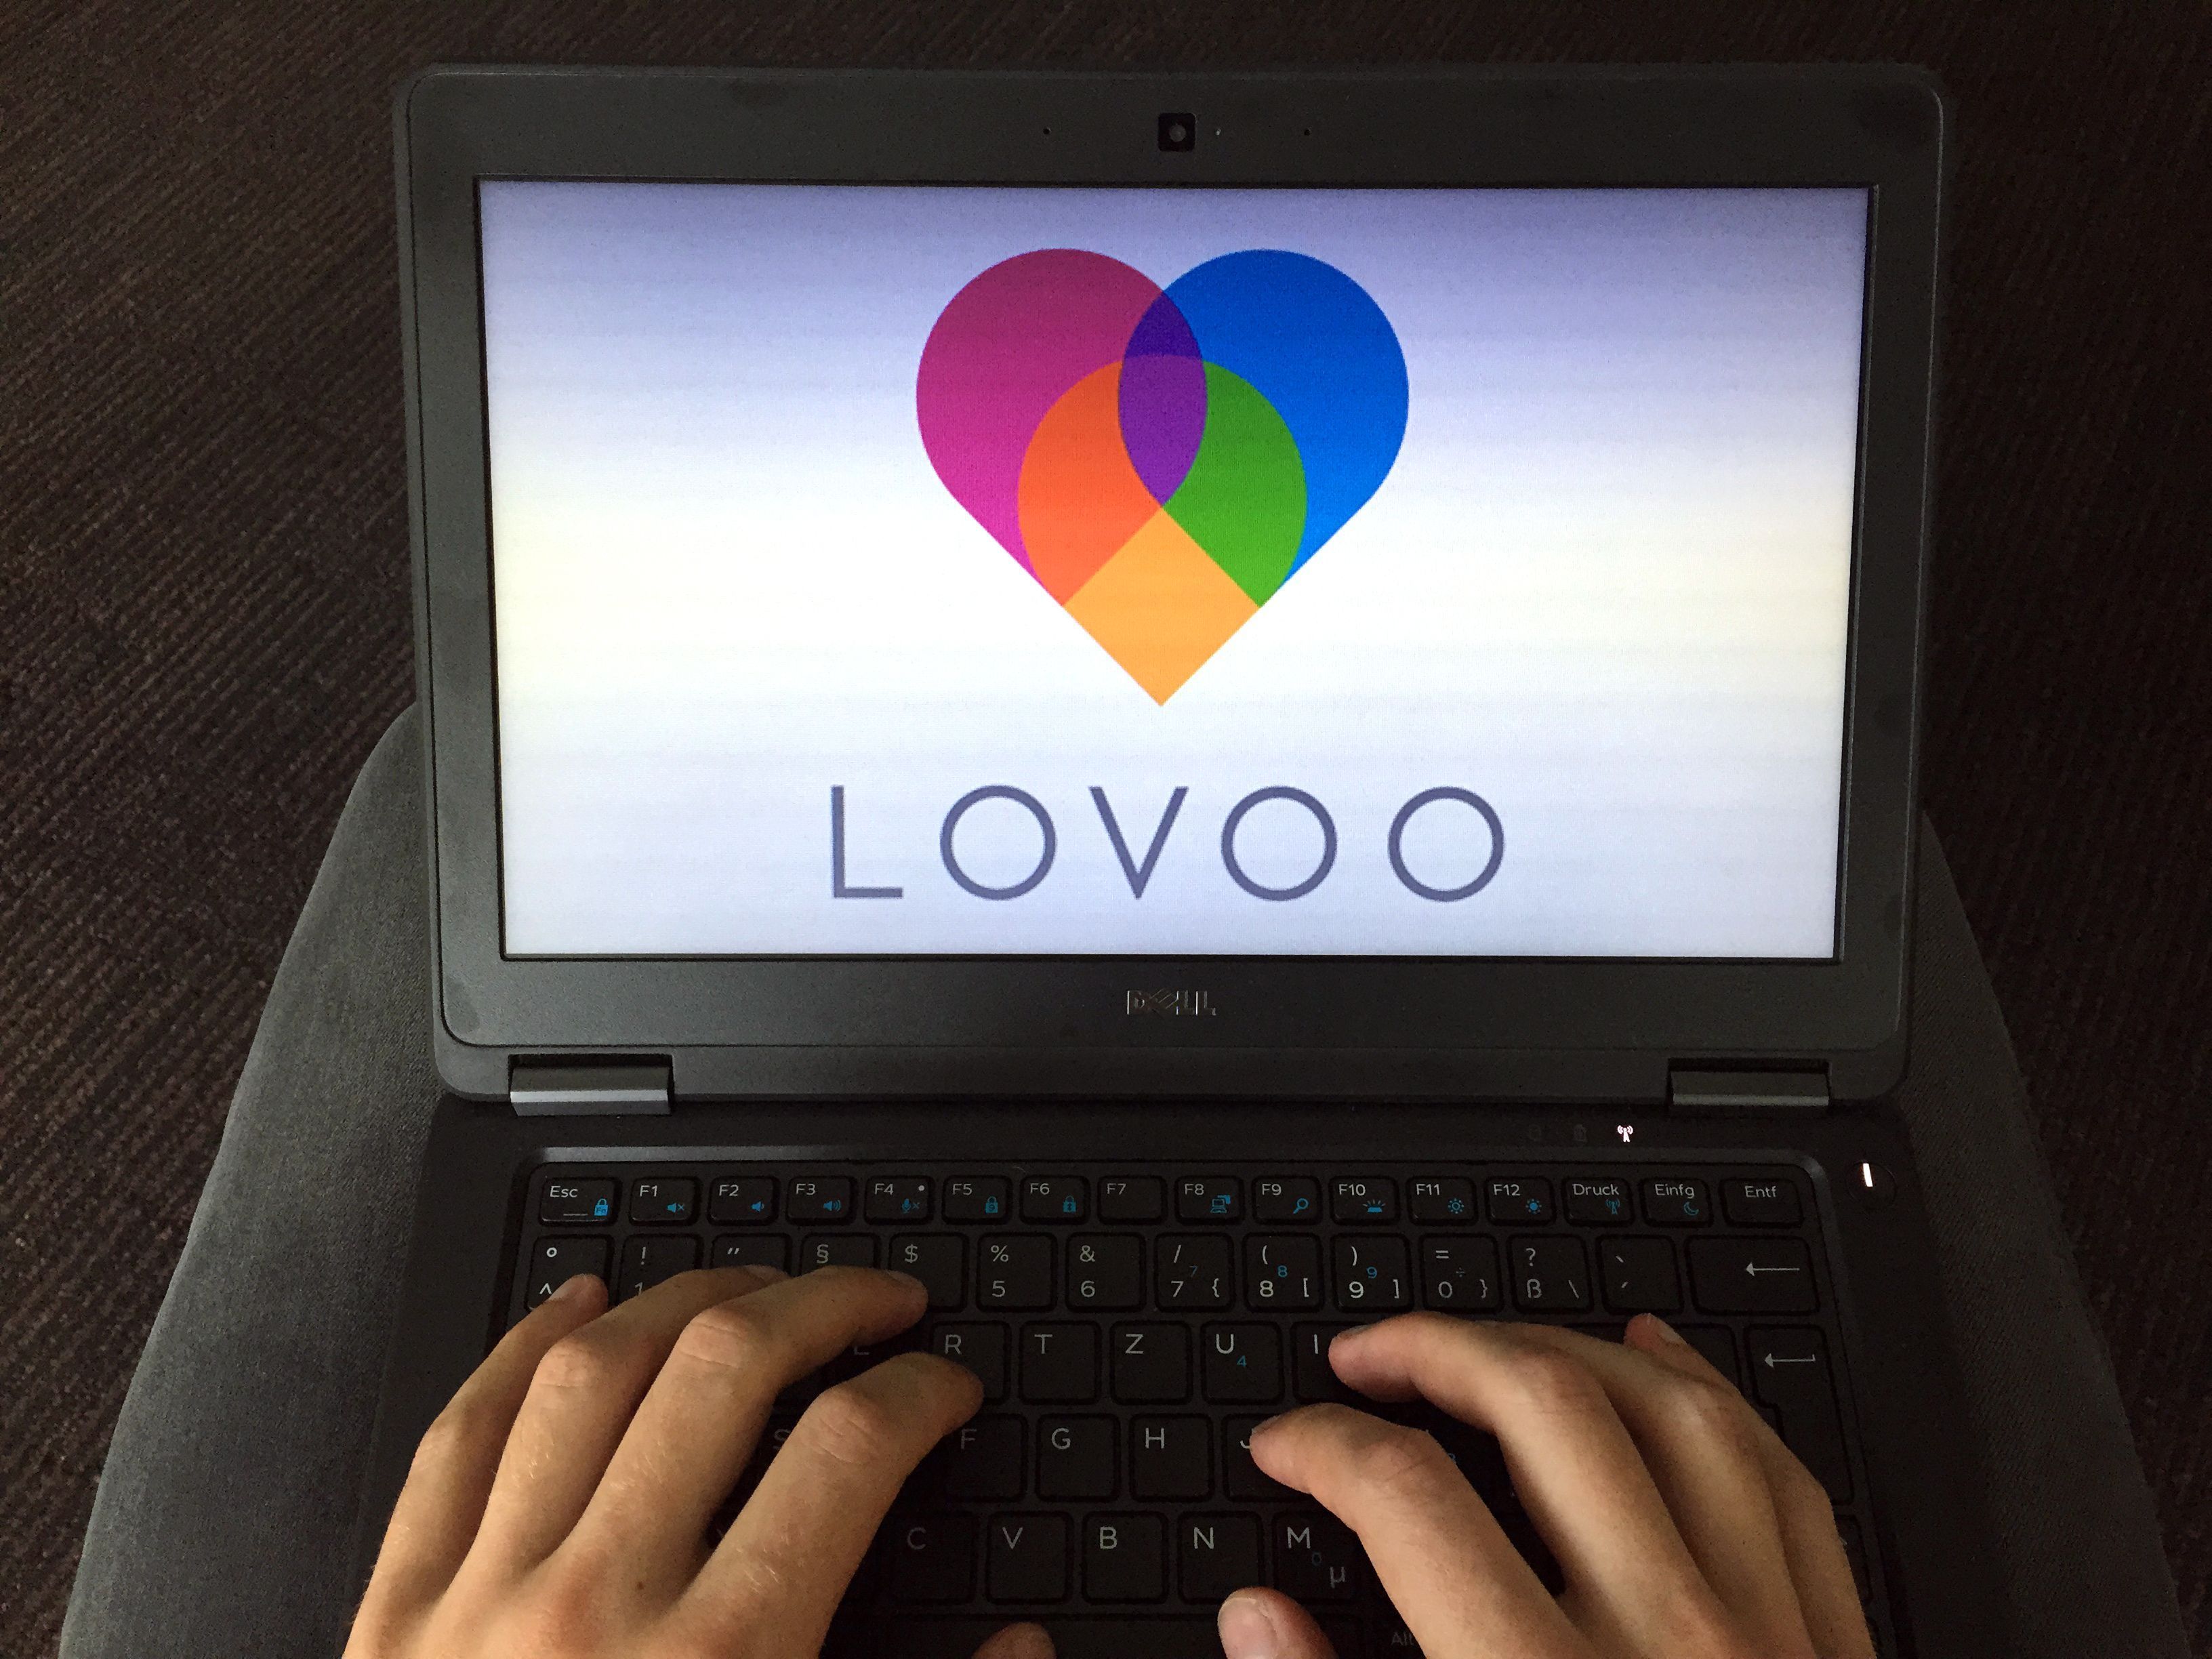 Du kannst dich auch auf deinem PC bei Lovoo registrieren und anmelden